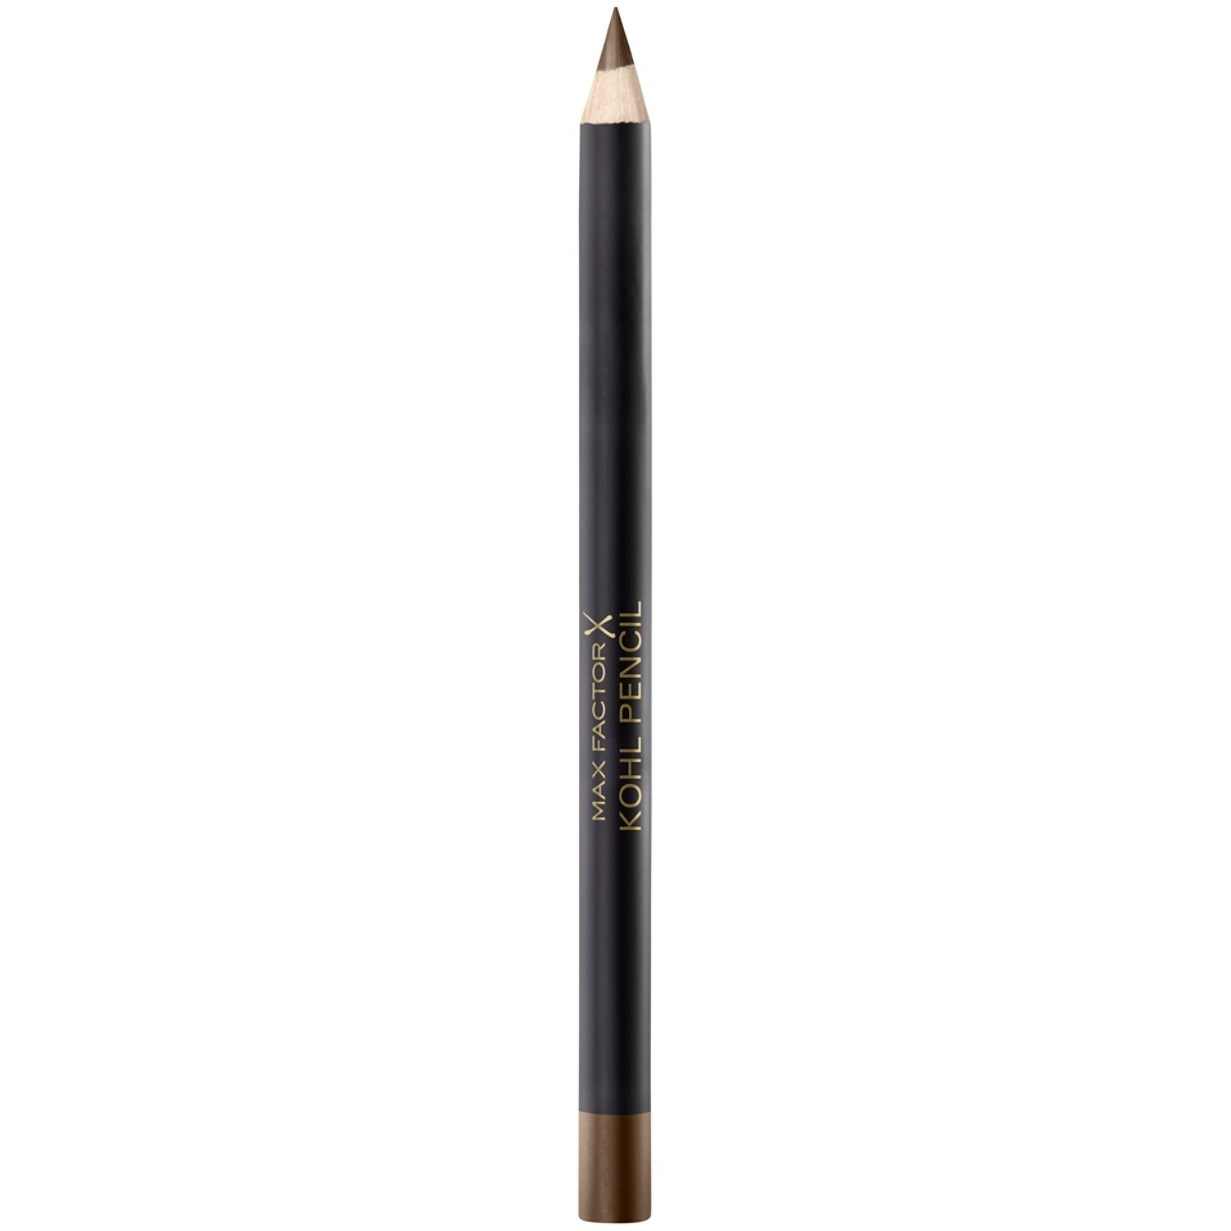 Bilde av Max Factor Eyeliner Pencil 40 Taupe